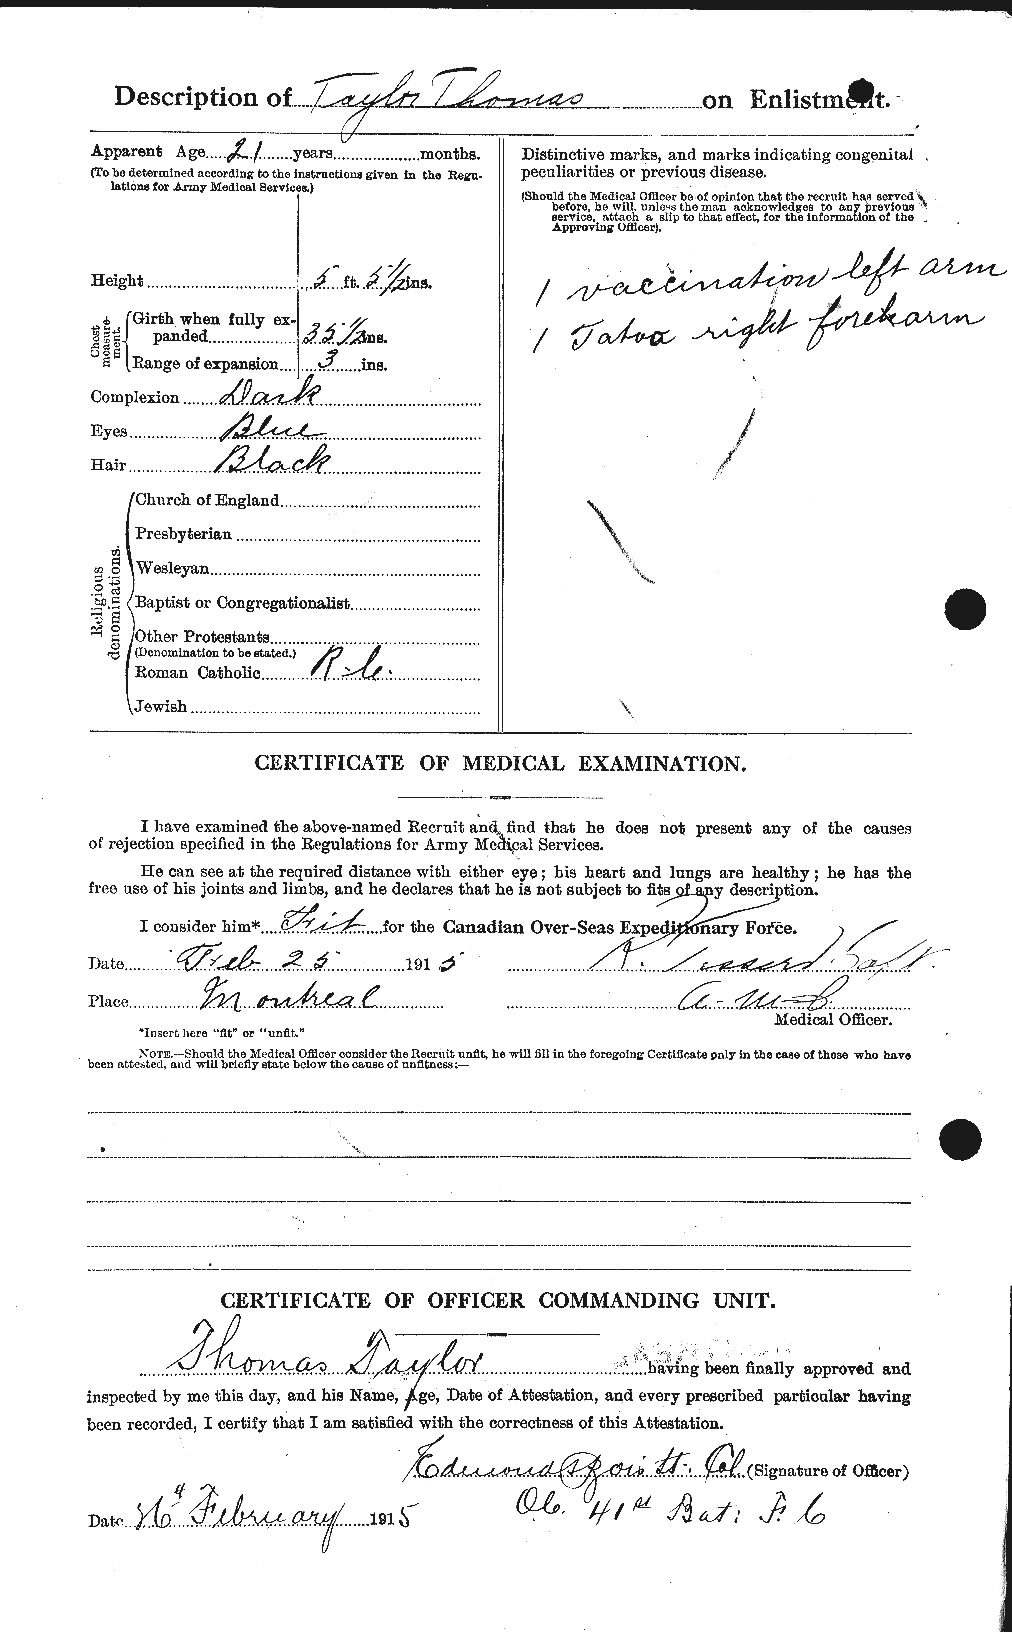 Dossiers du Personnel de la Première Guerre mondiale - CEC 627961b